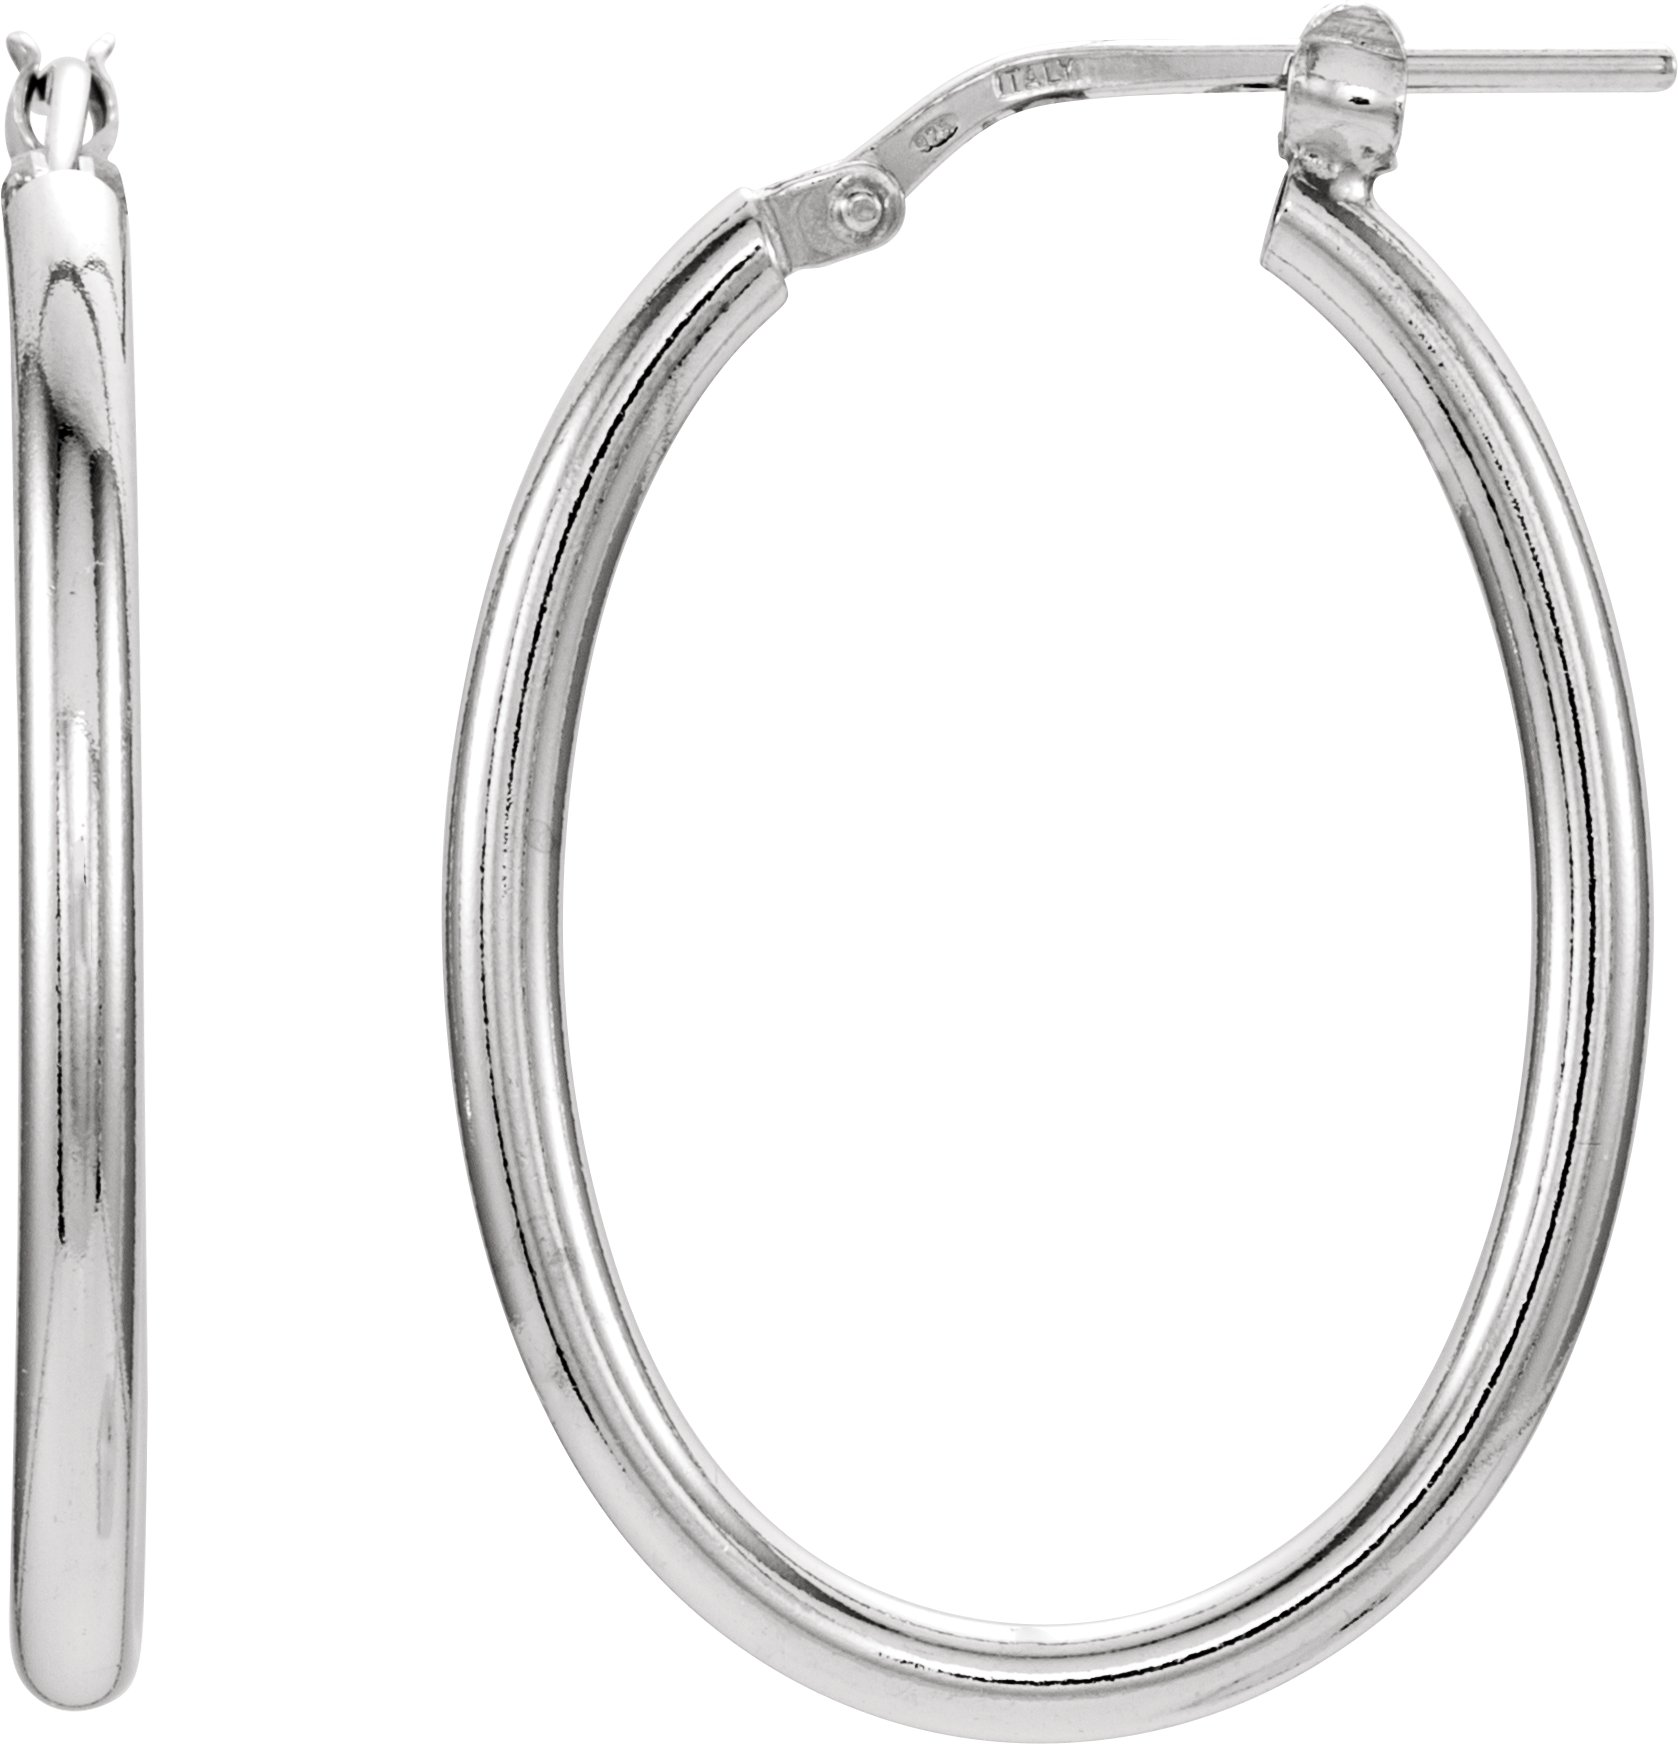 Sterling Silver 28x22 mm Tube Hoop Earrings